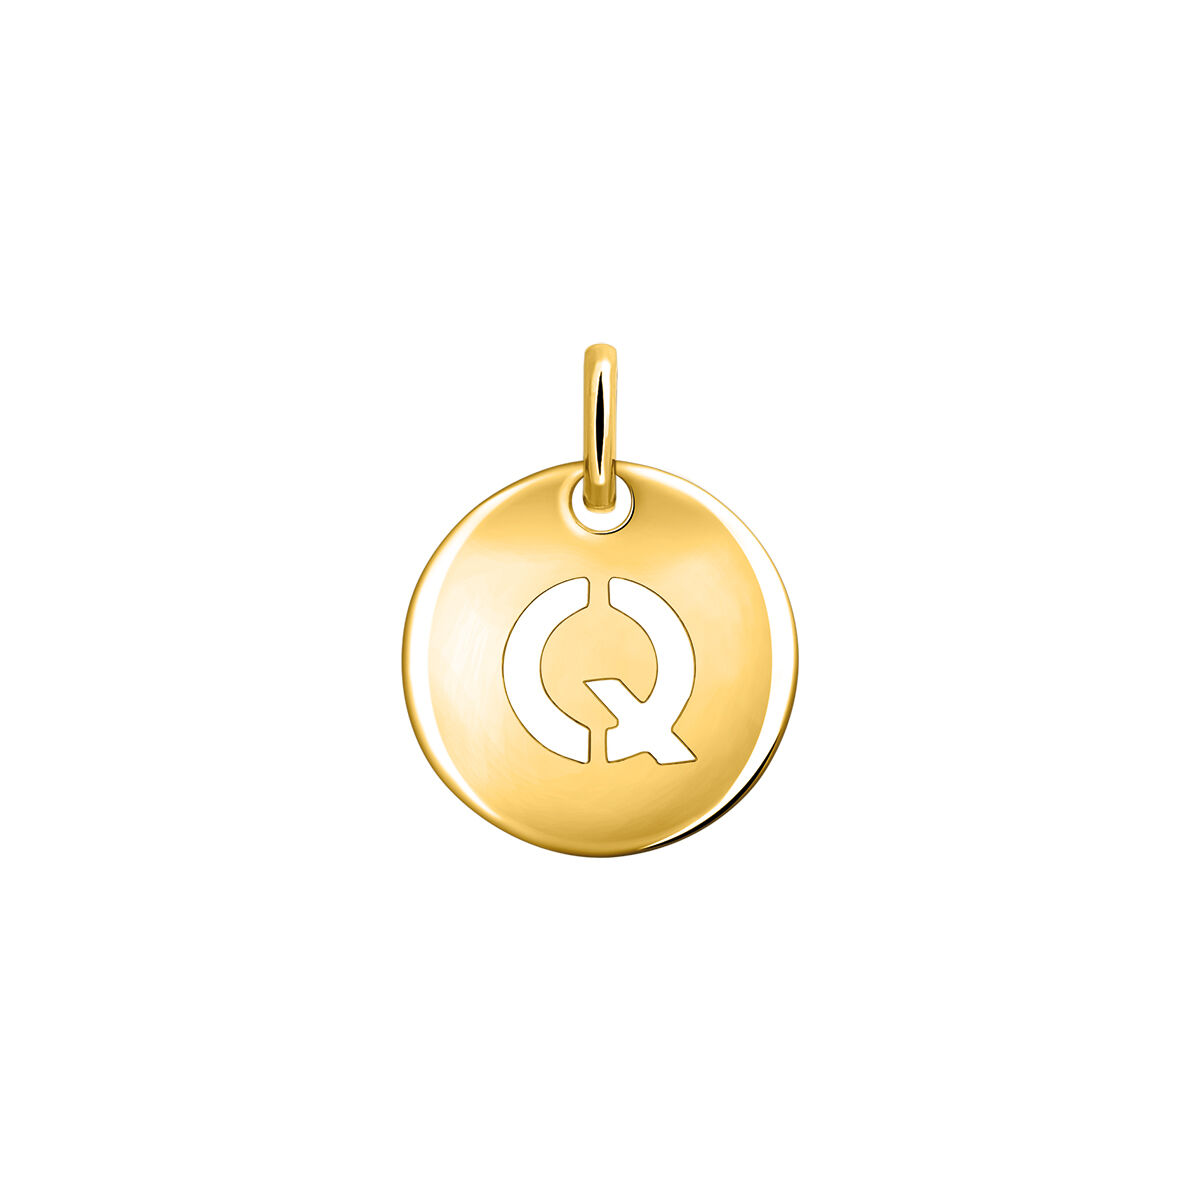 Charm medalla inicial Q plata recubierta oro  , J03455-02-Q, hi-res